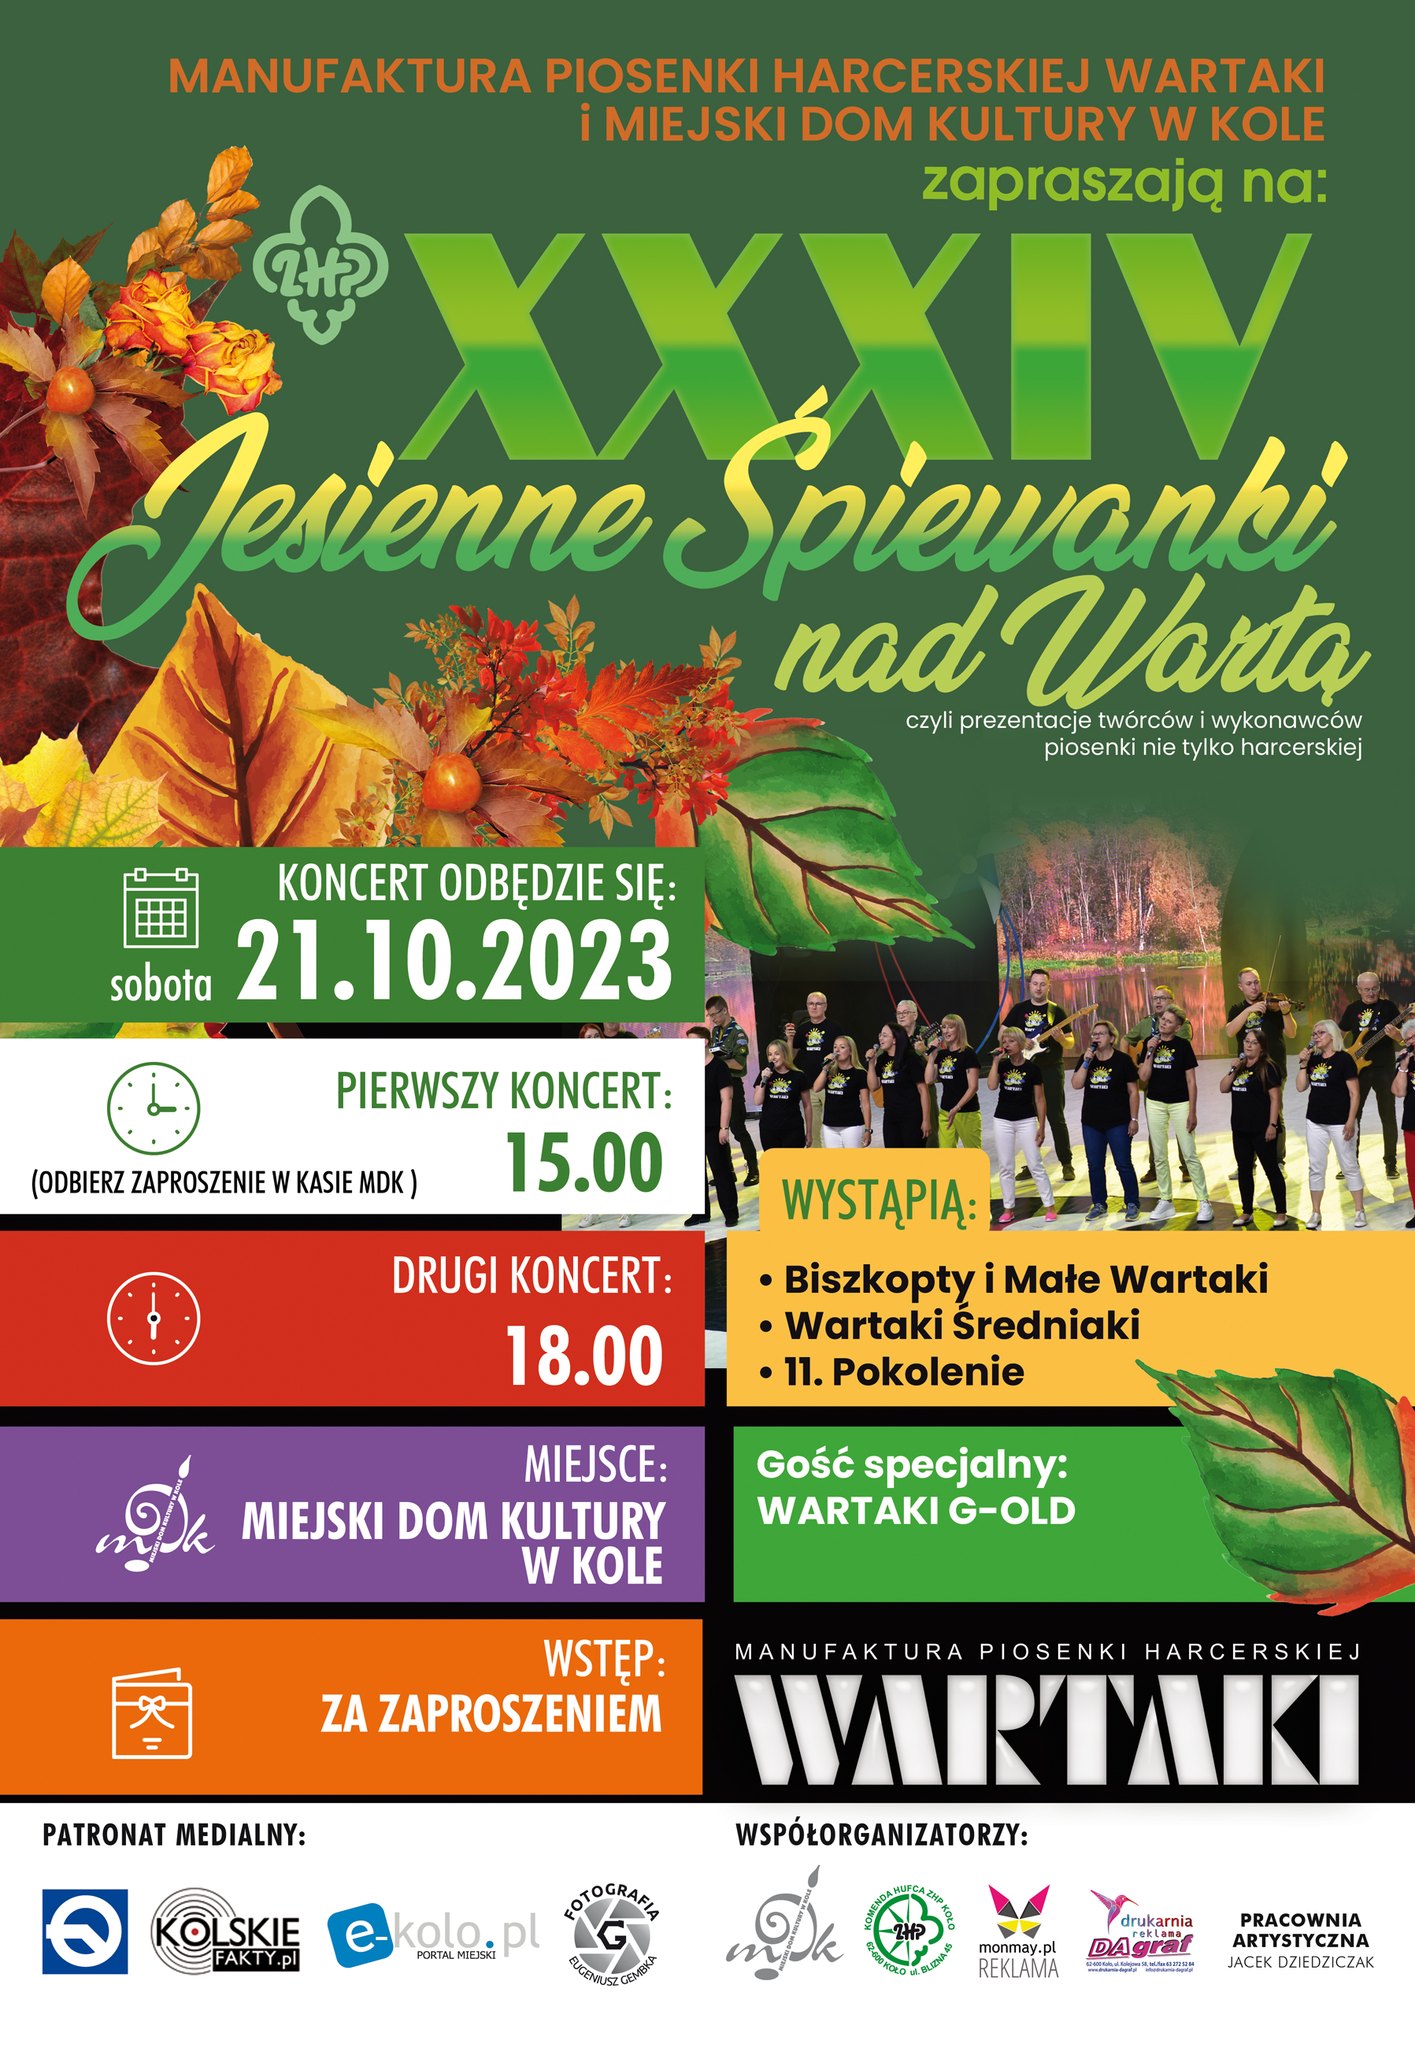 Plakat informujący o koncercie XXXIV Jesienne Śpiewanki nad Wartą, tekst pod plakatem